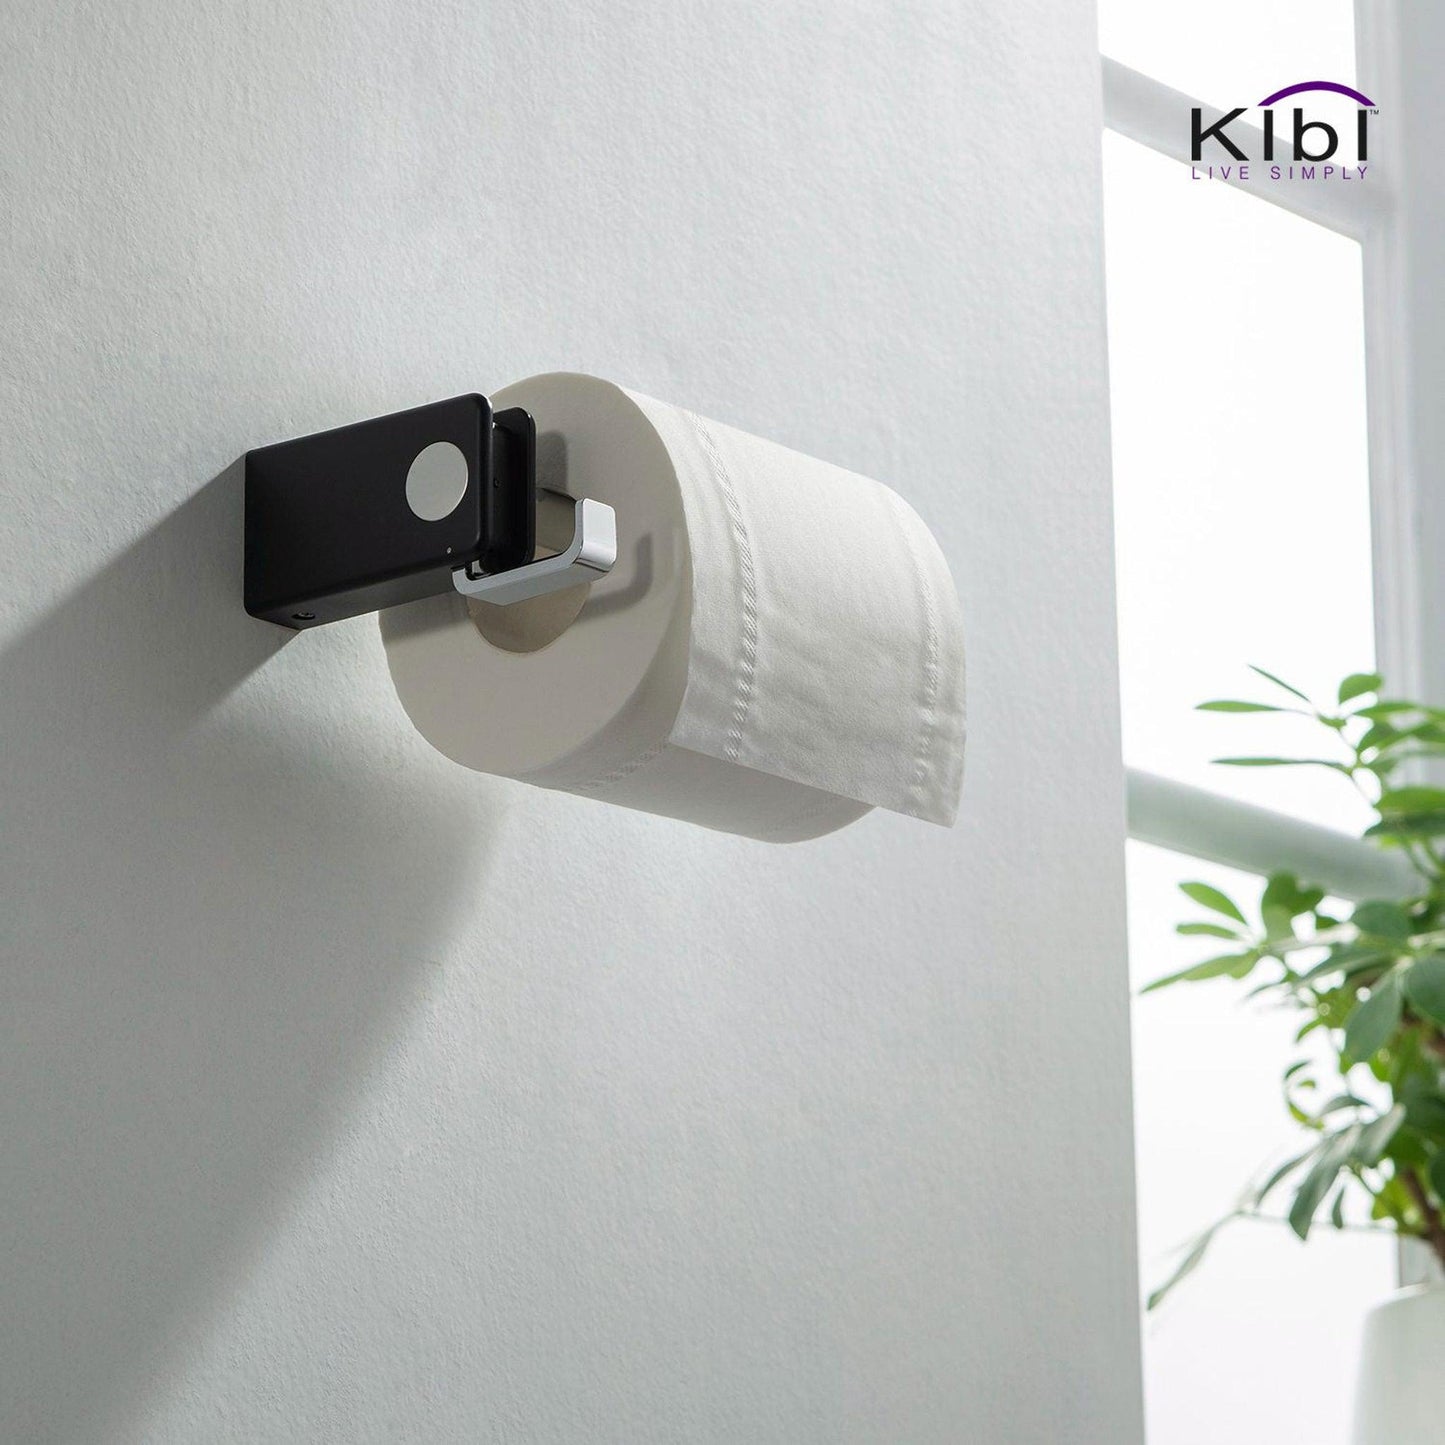 KIBI Artis Bathroom Tissue Holder With Hook in Chrome Black Finish